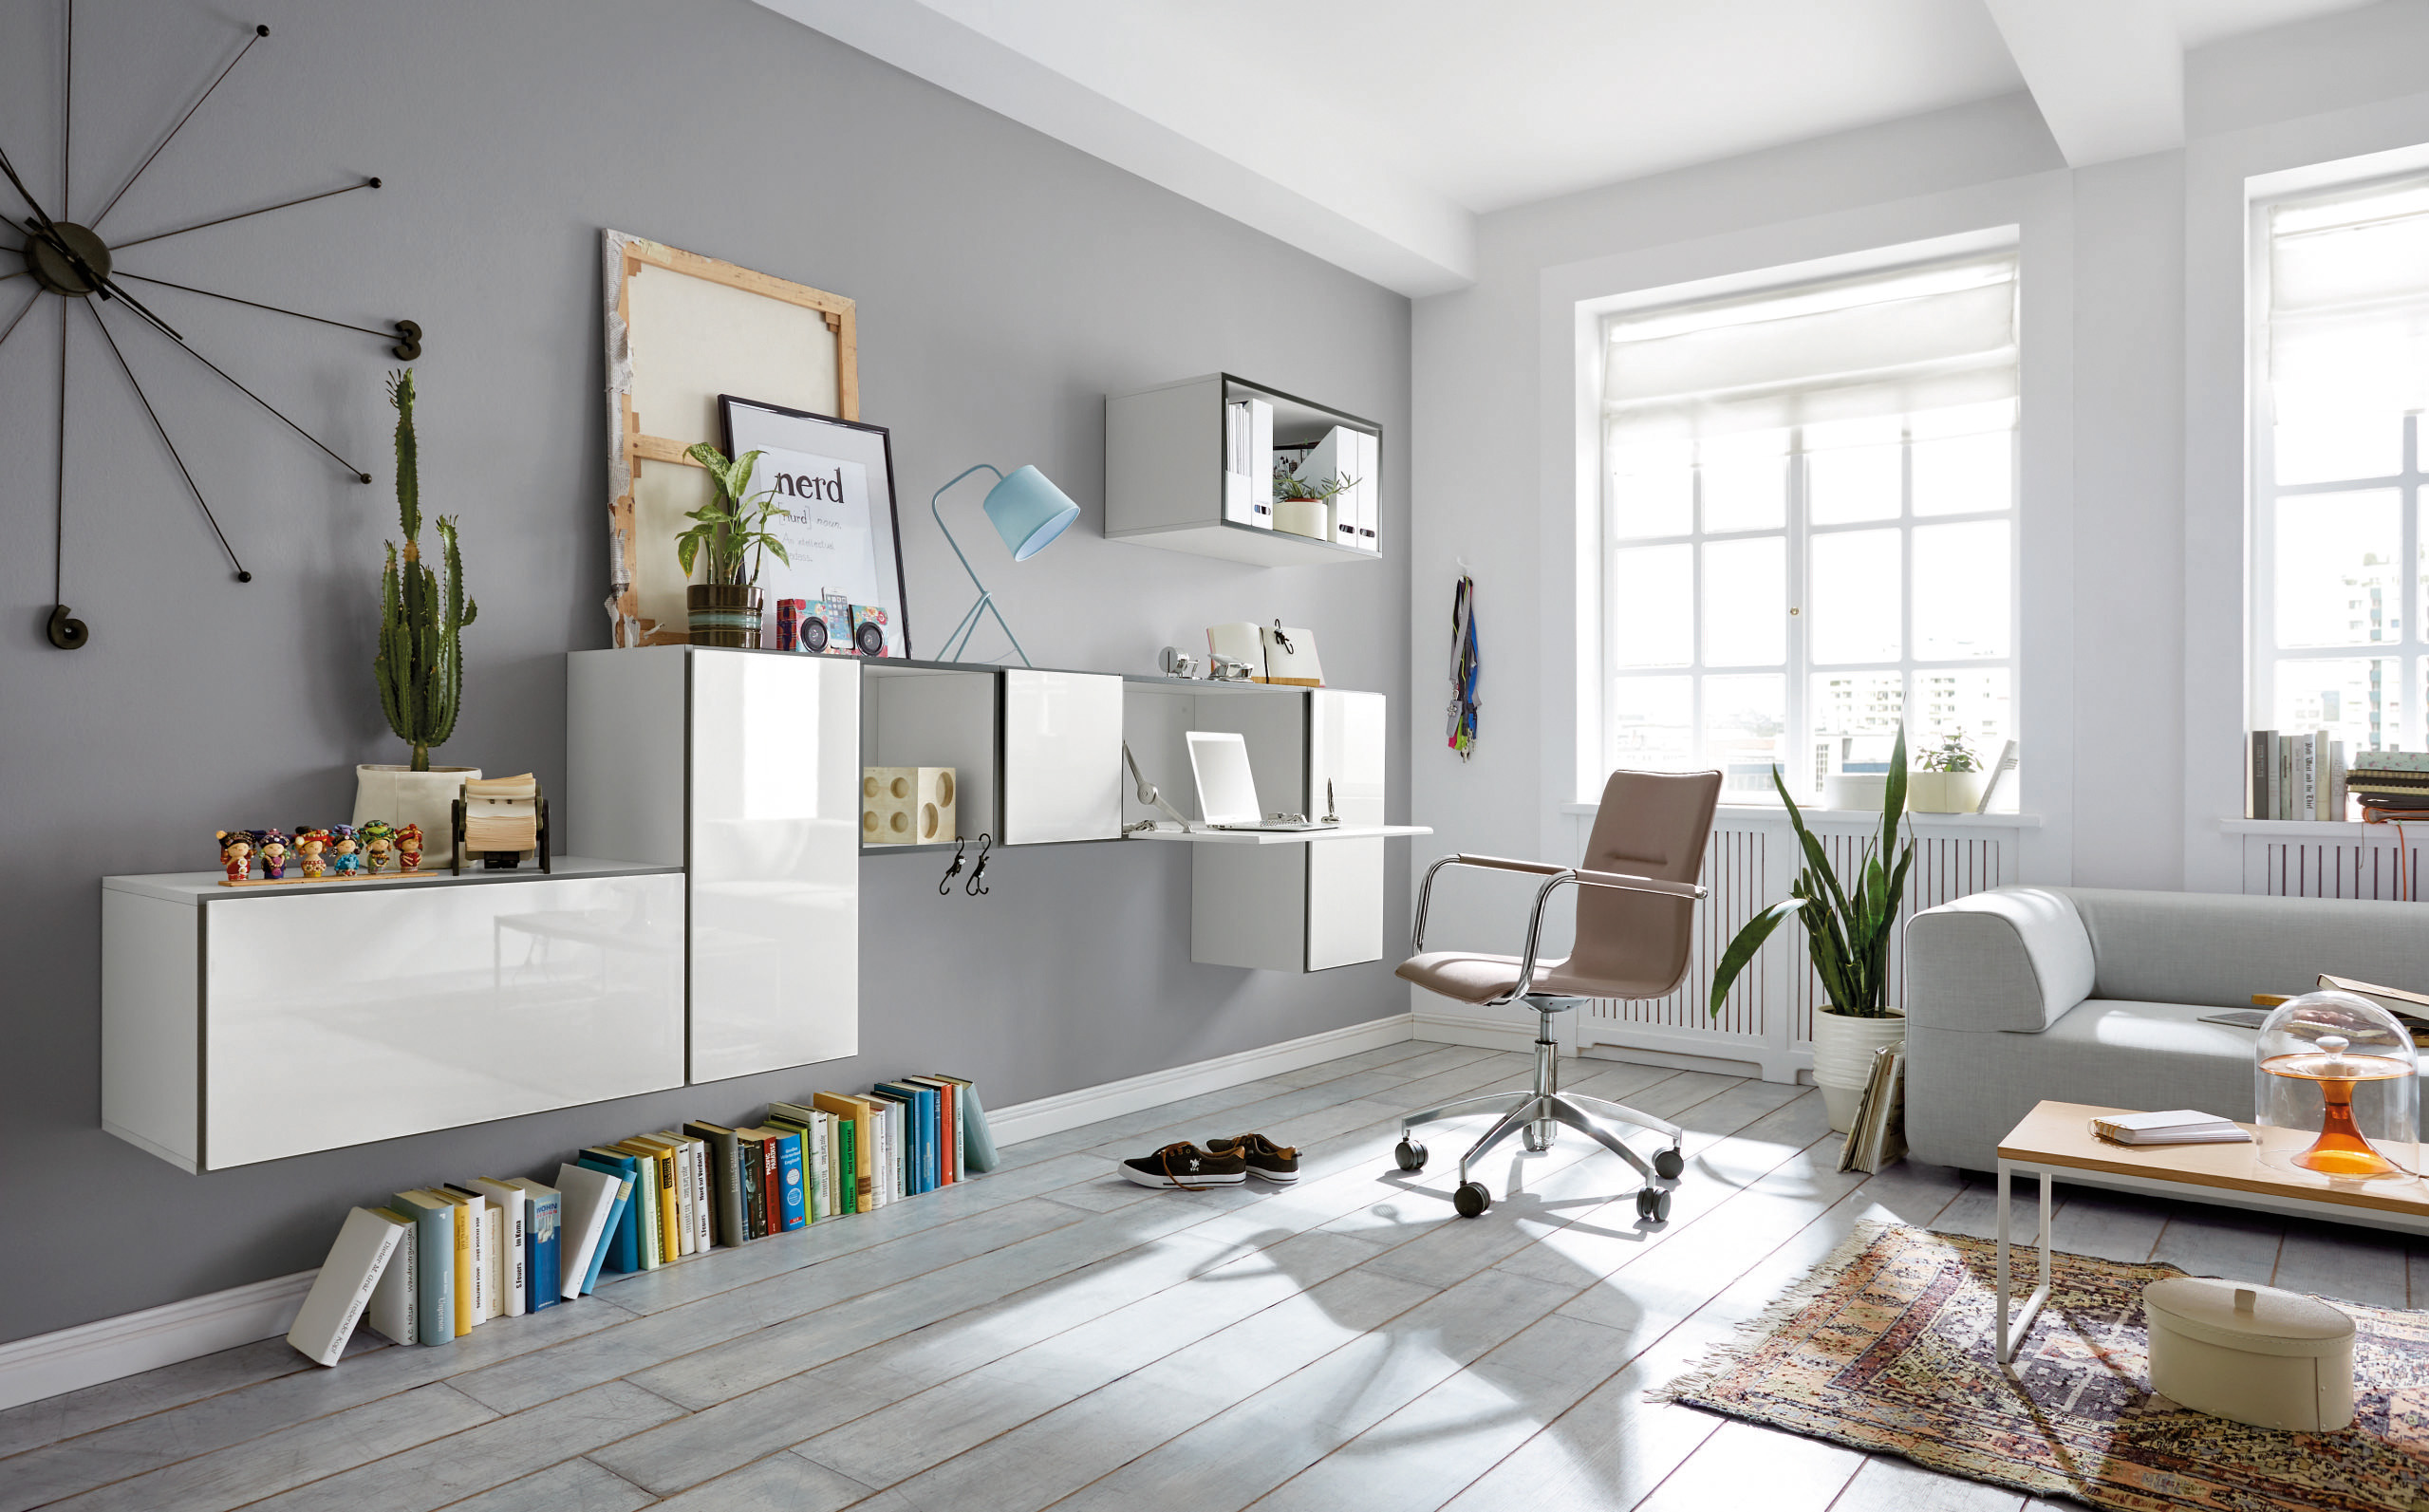 La oficina se puede instalar en casa con muebles que no estorben la circulación, por ejemplo con escritorios que se integren visualmente en la habitación. Foto Prensa Libre: Hülsta/VDM/ DPA